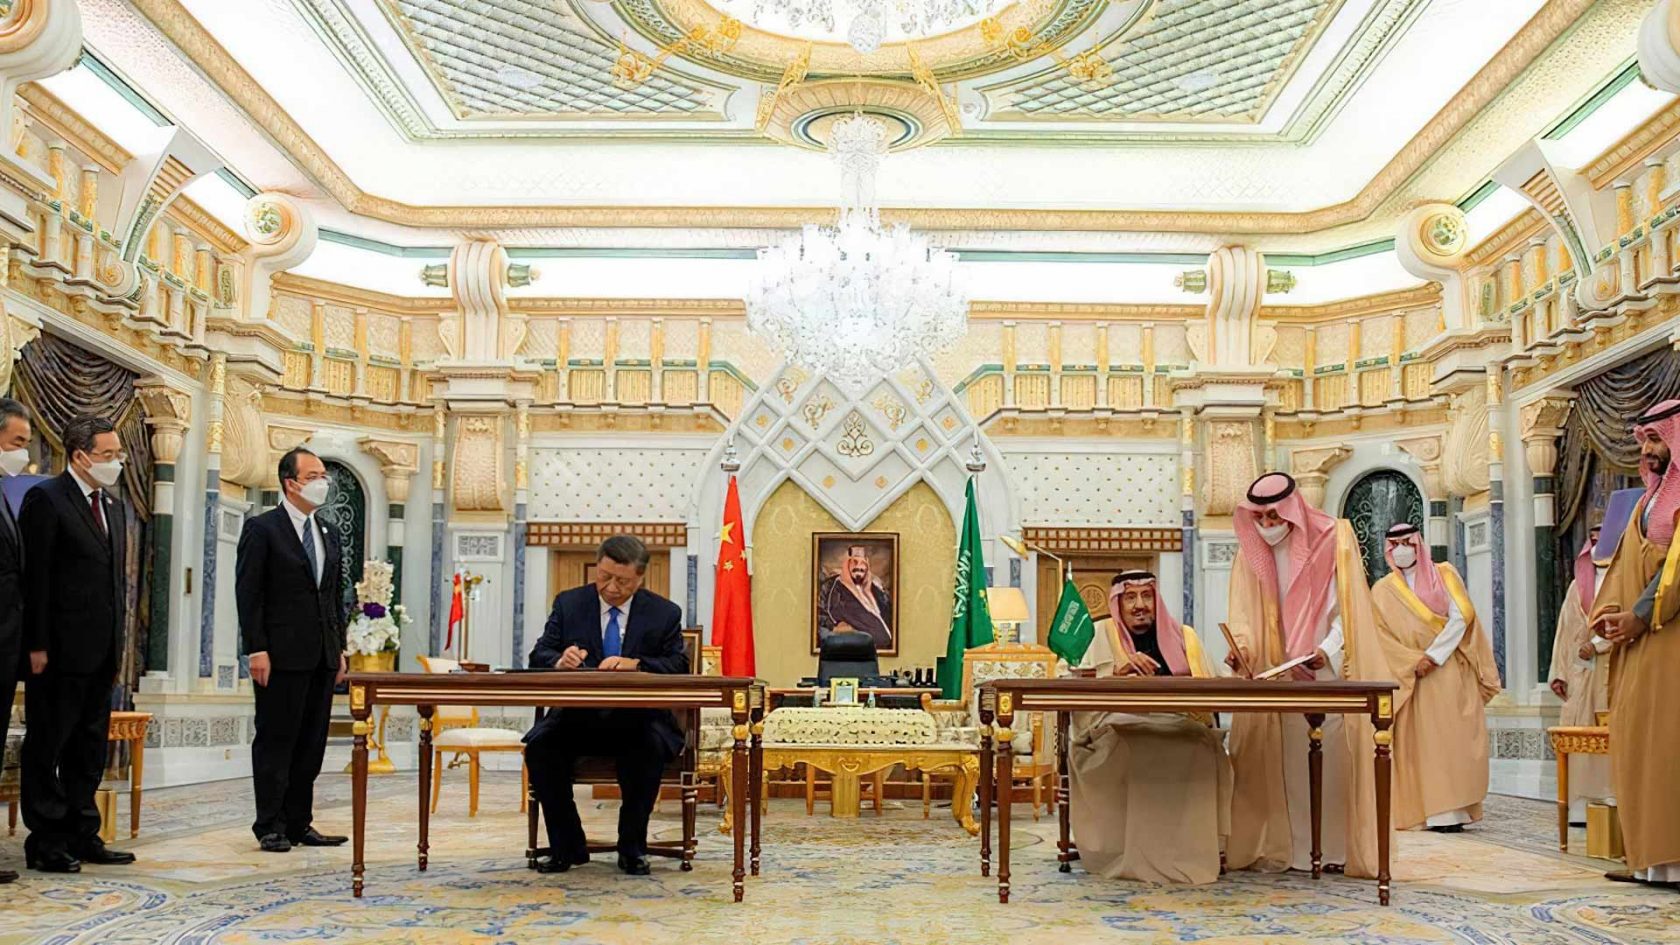 Con l’alleanza tra Cina e Arabia Saudita si allarga il club che unisce i regimi autoritari